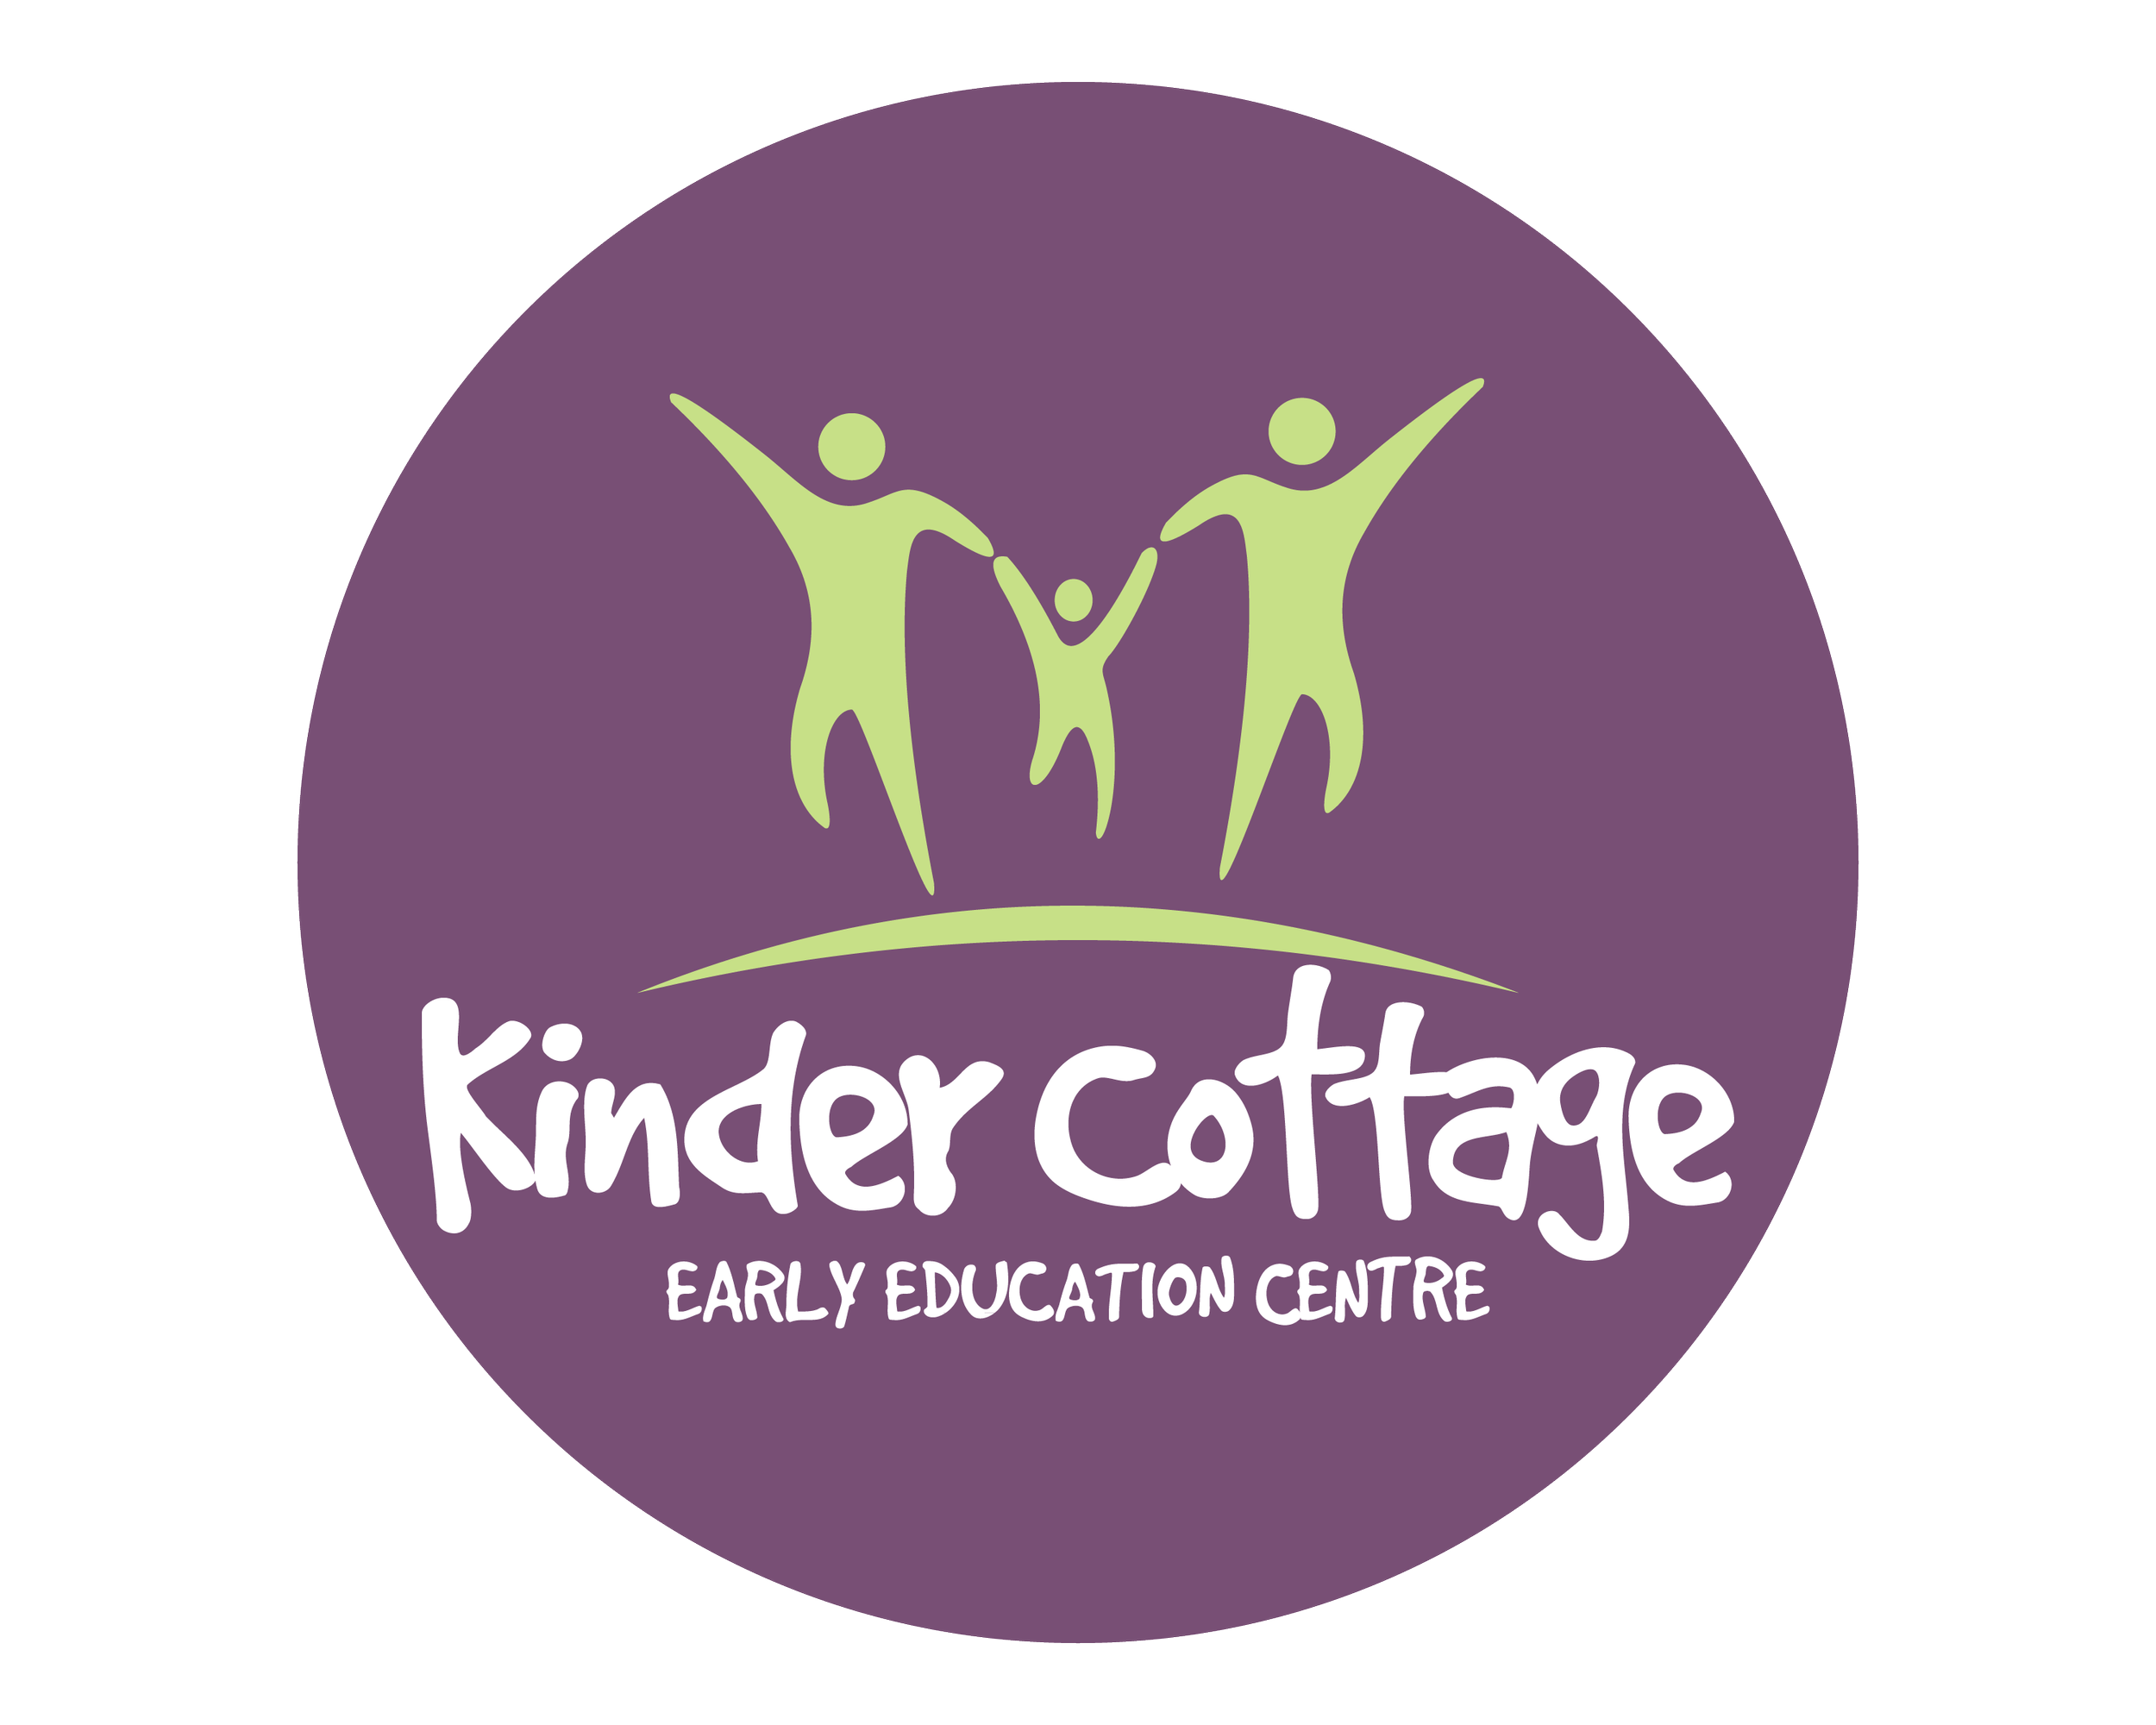 KINDER-COTTAGE-logo (1).png